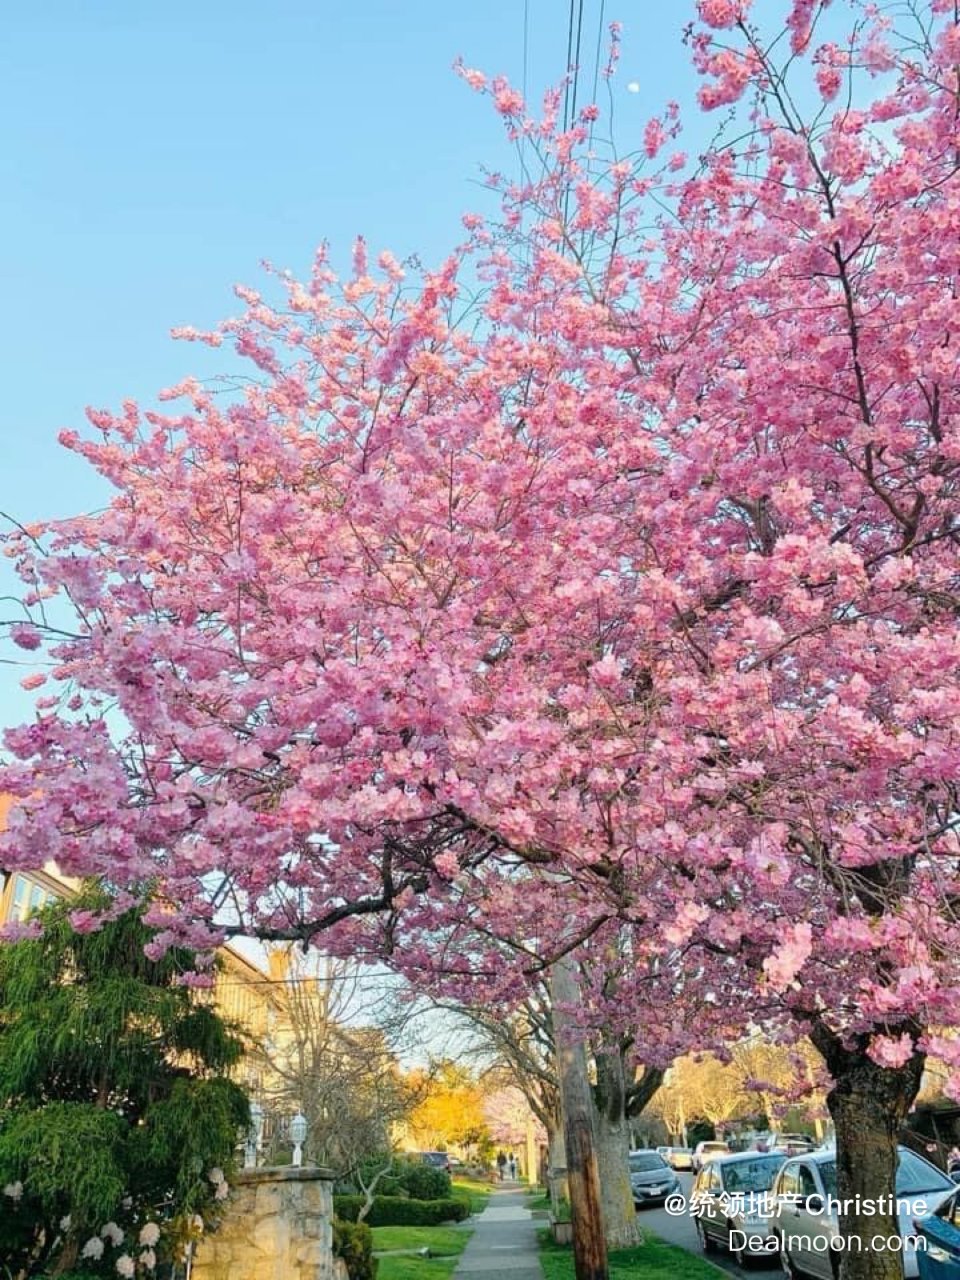 路边的樱花树也很漂亮呀...